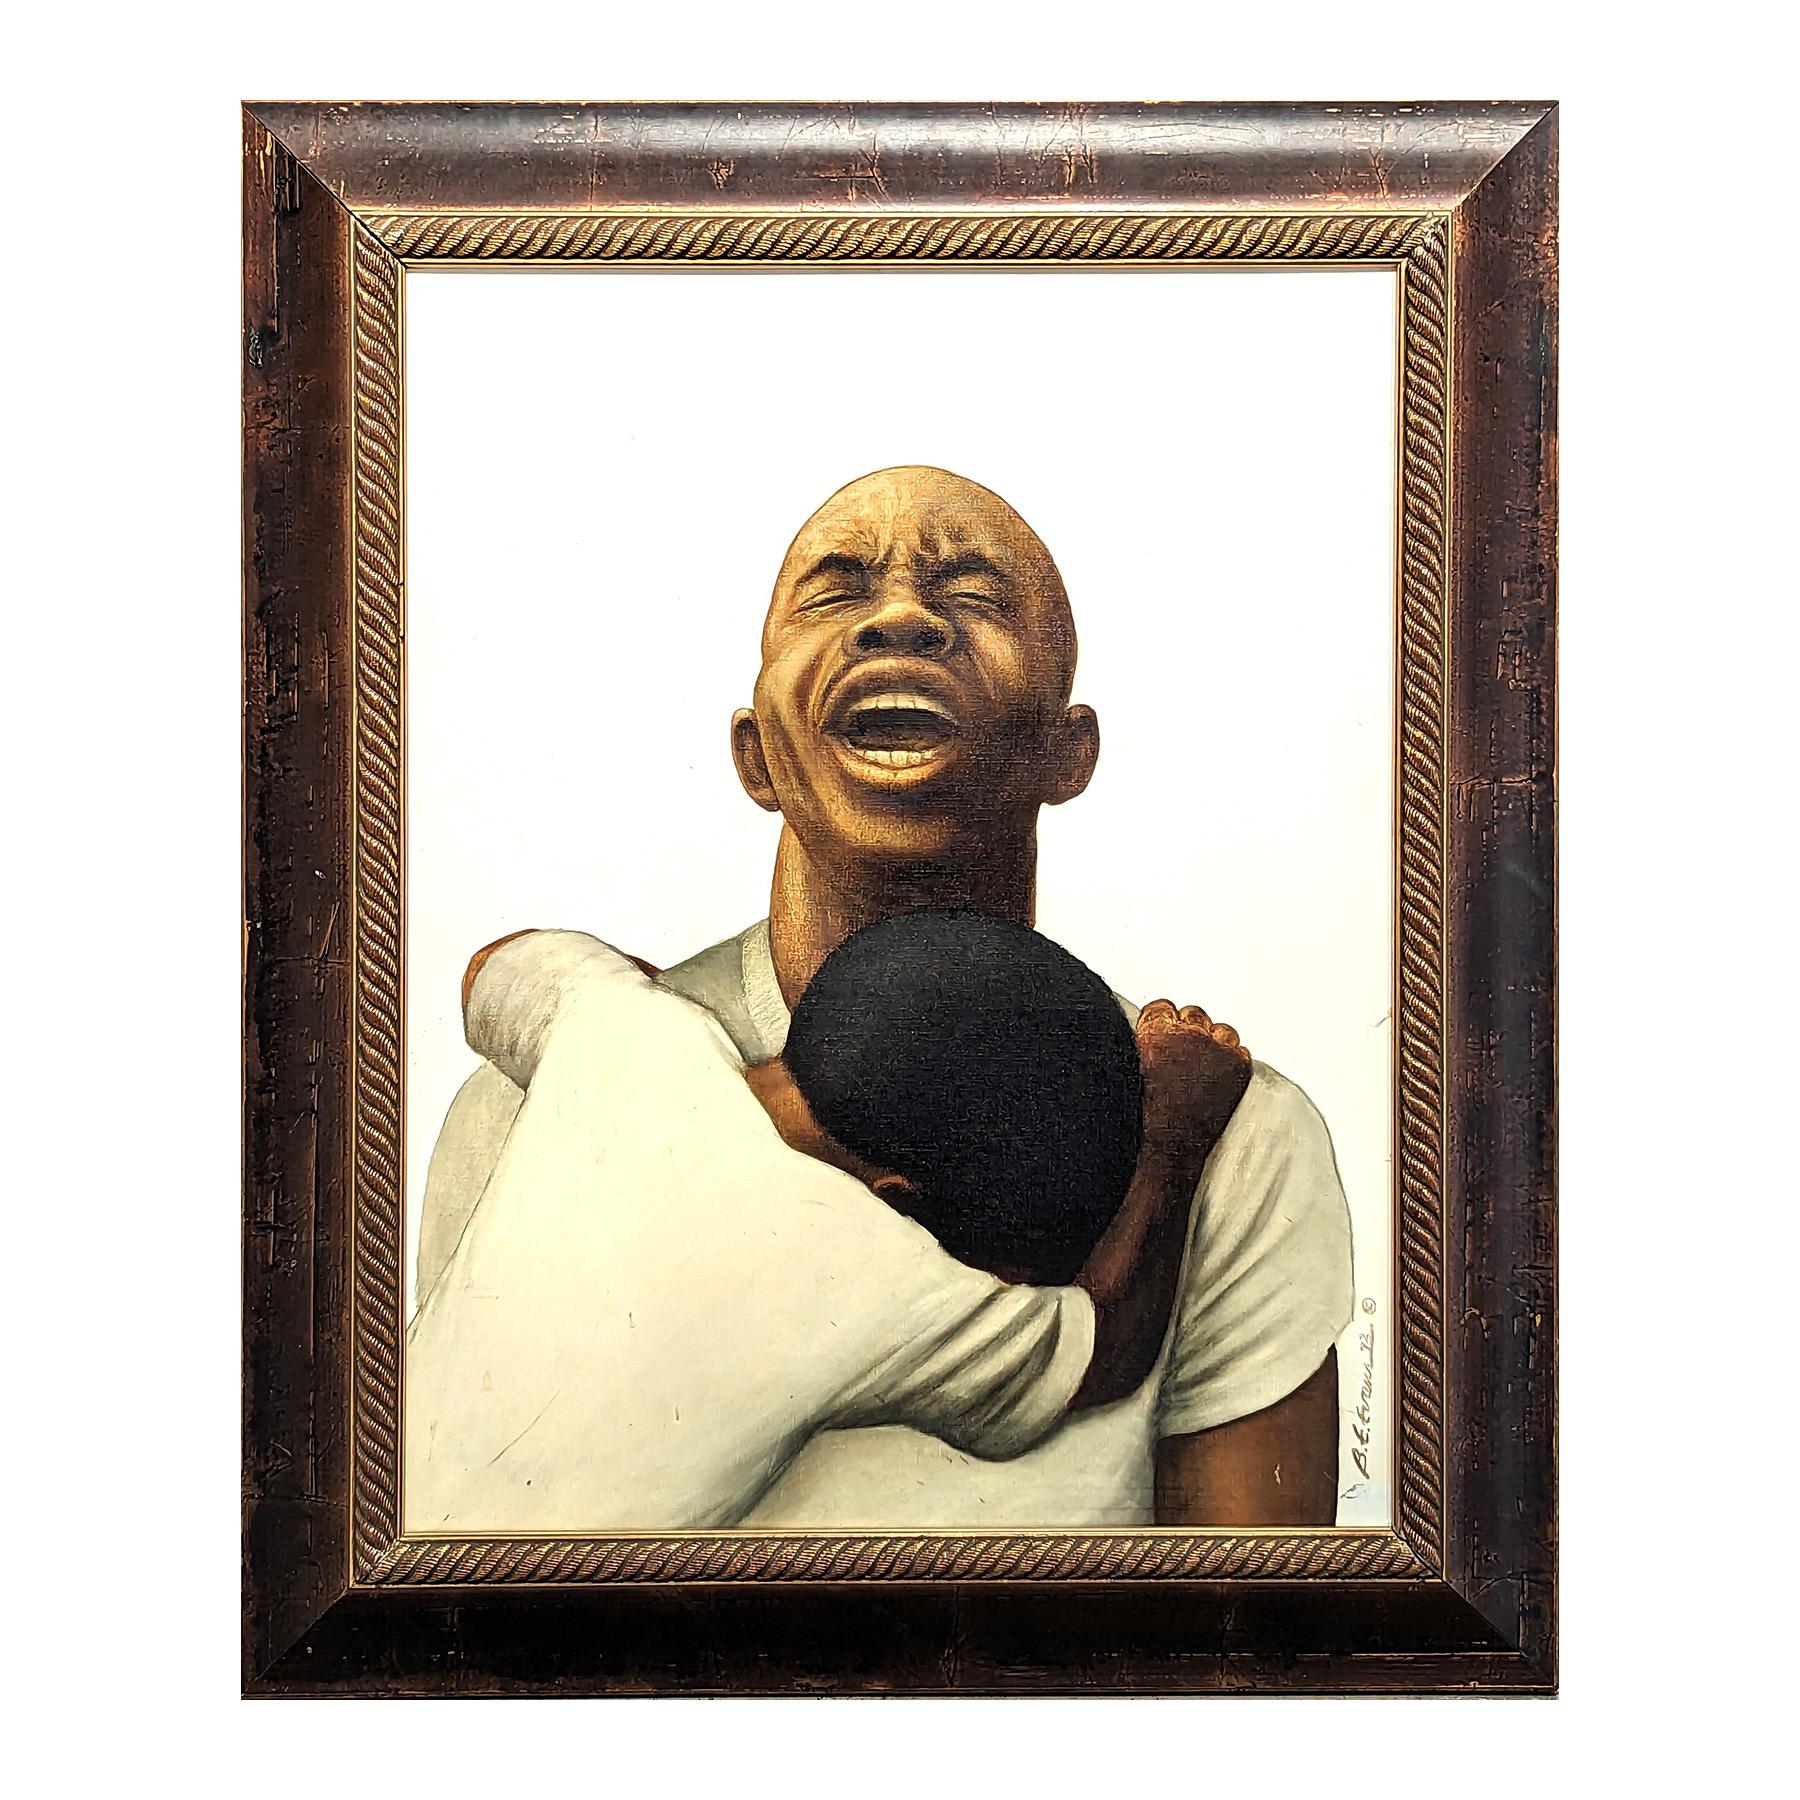 God Save the Children Frühes figuratives Porträt eines verzweifelten schwarzen Mannes – Painting von Buford Evans